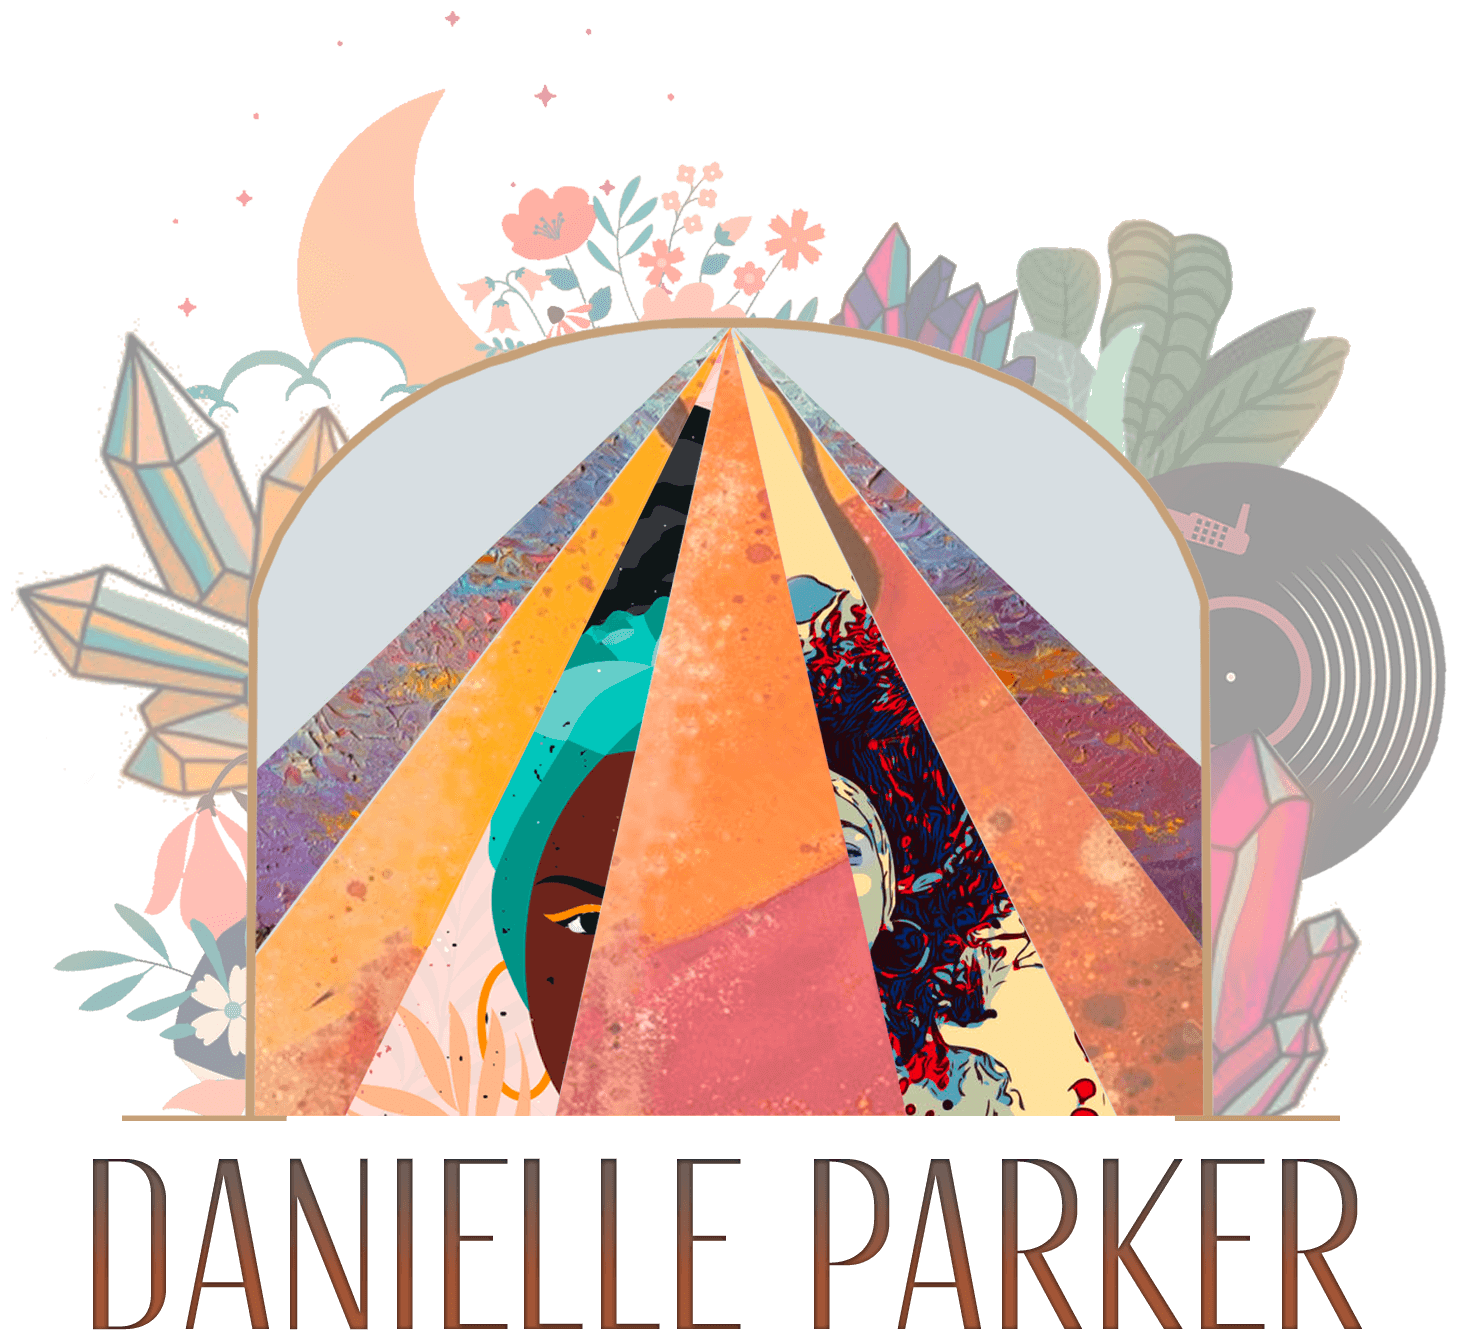 Danielle Parker